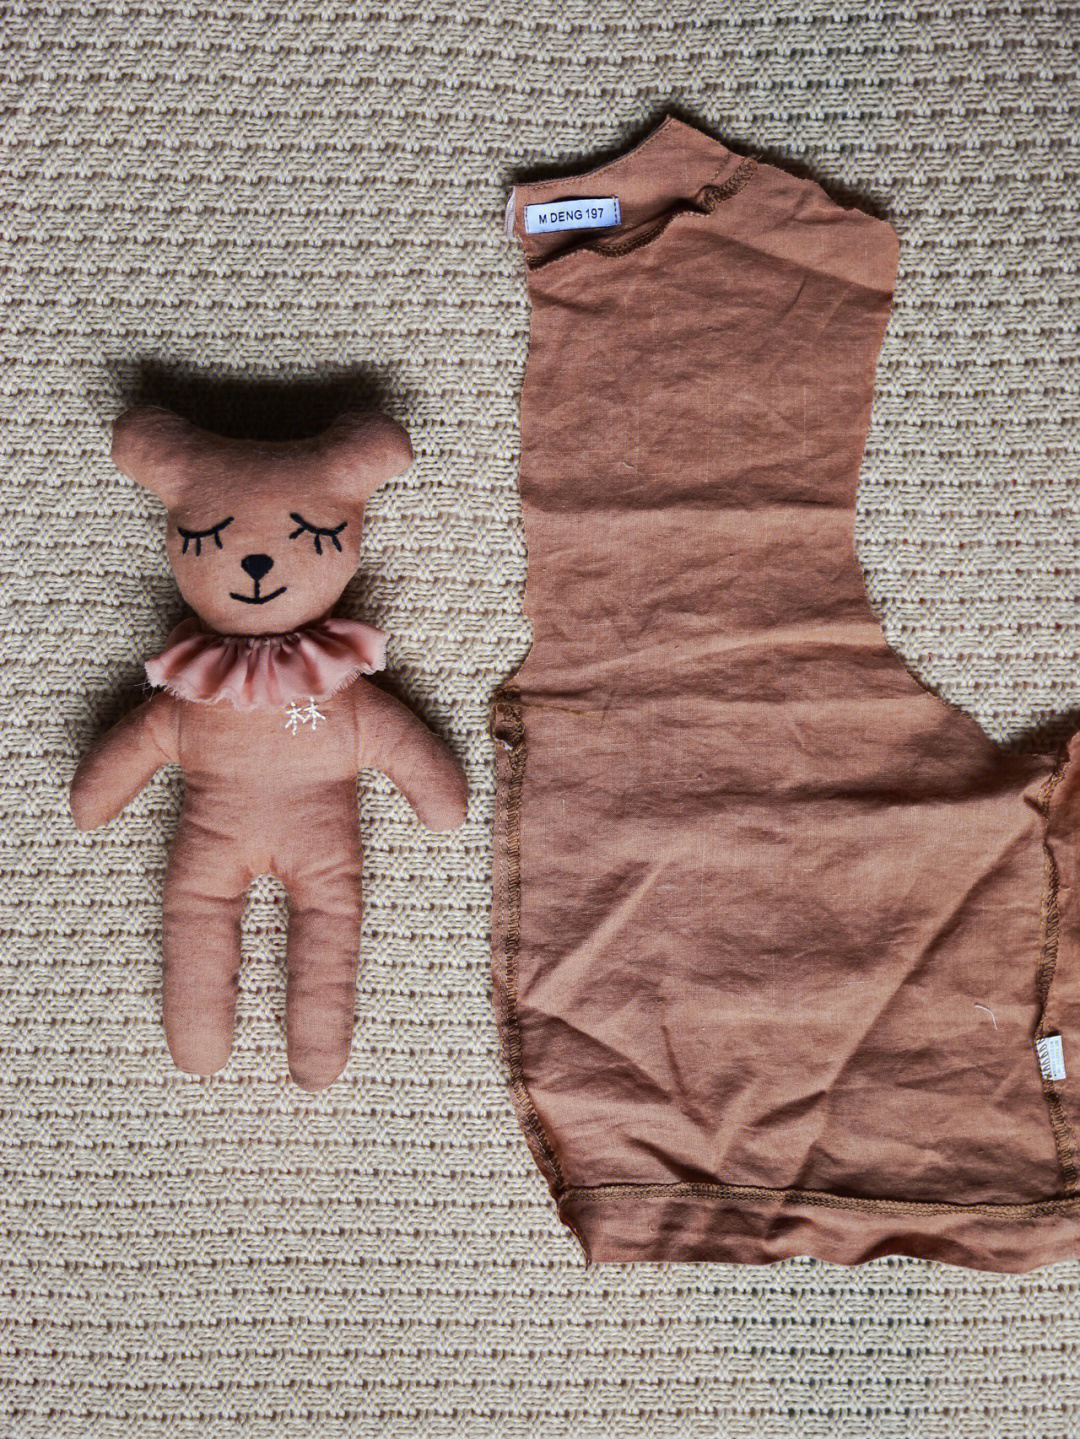 旧衣服不要扔给宝宝做个玩偶